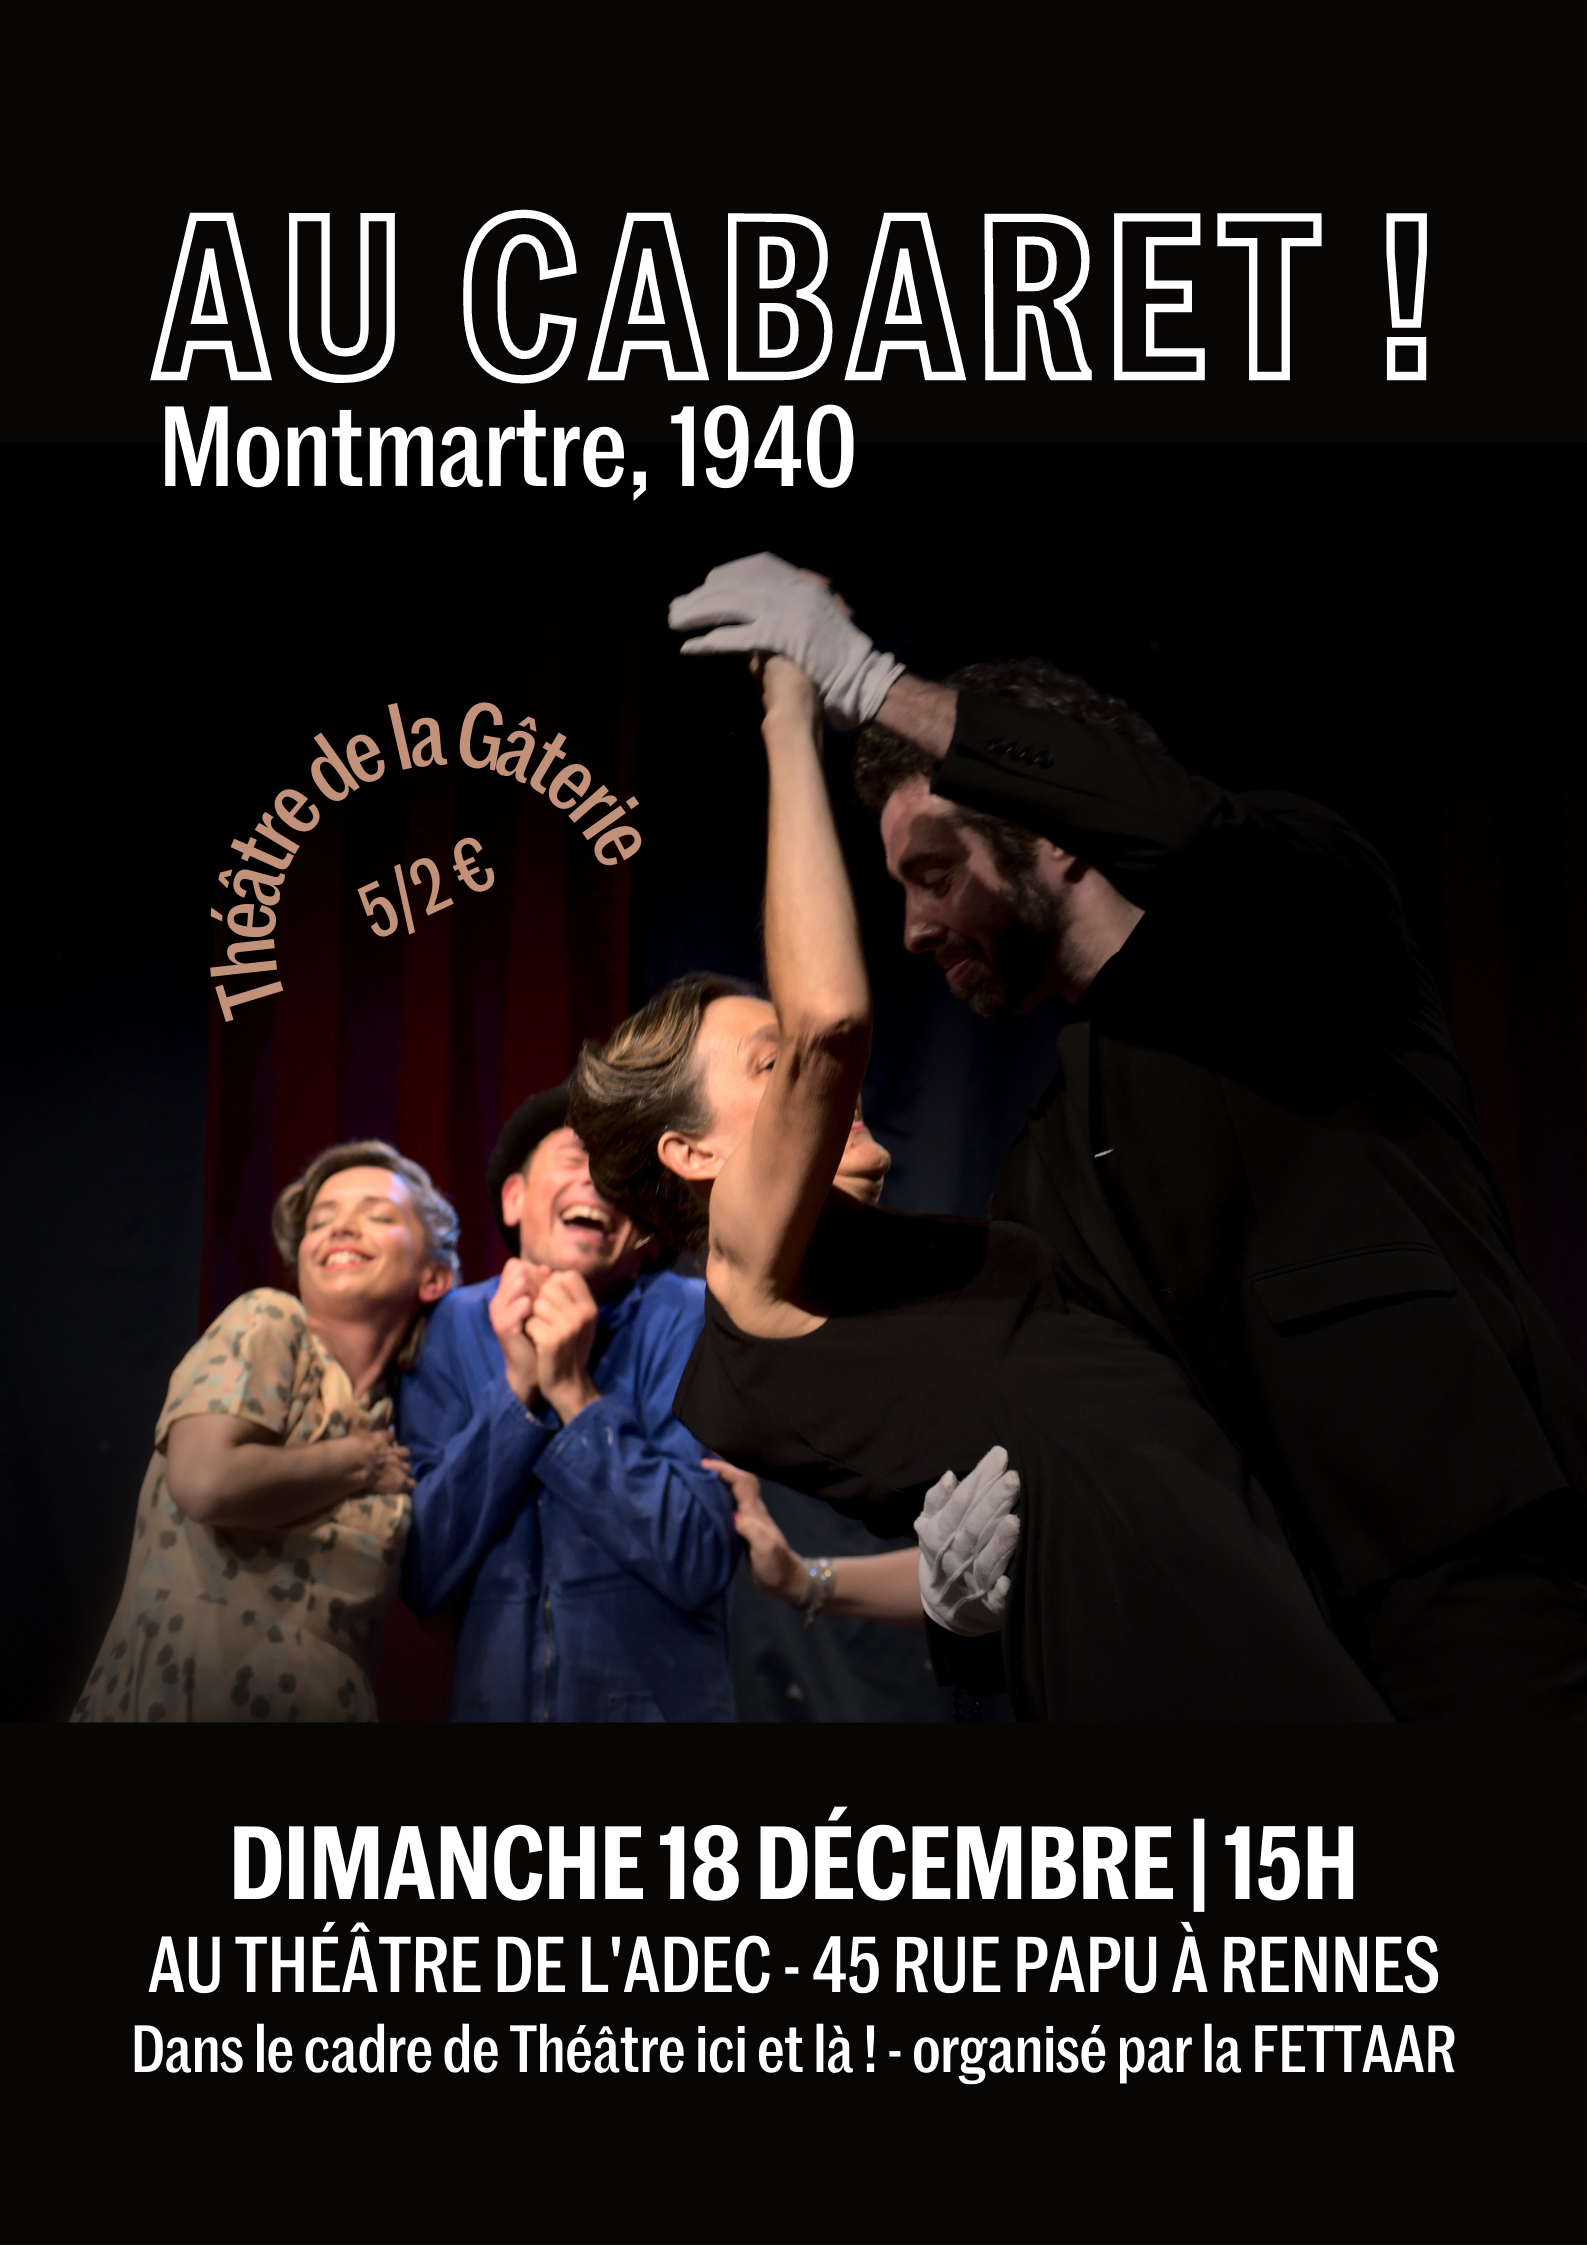 Au cabaret ! (Montmartre 1940)